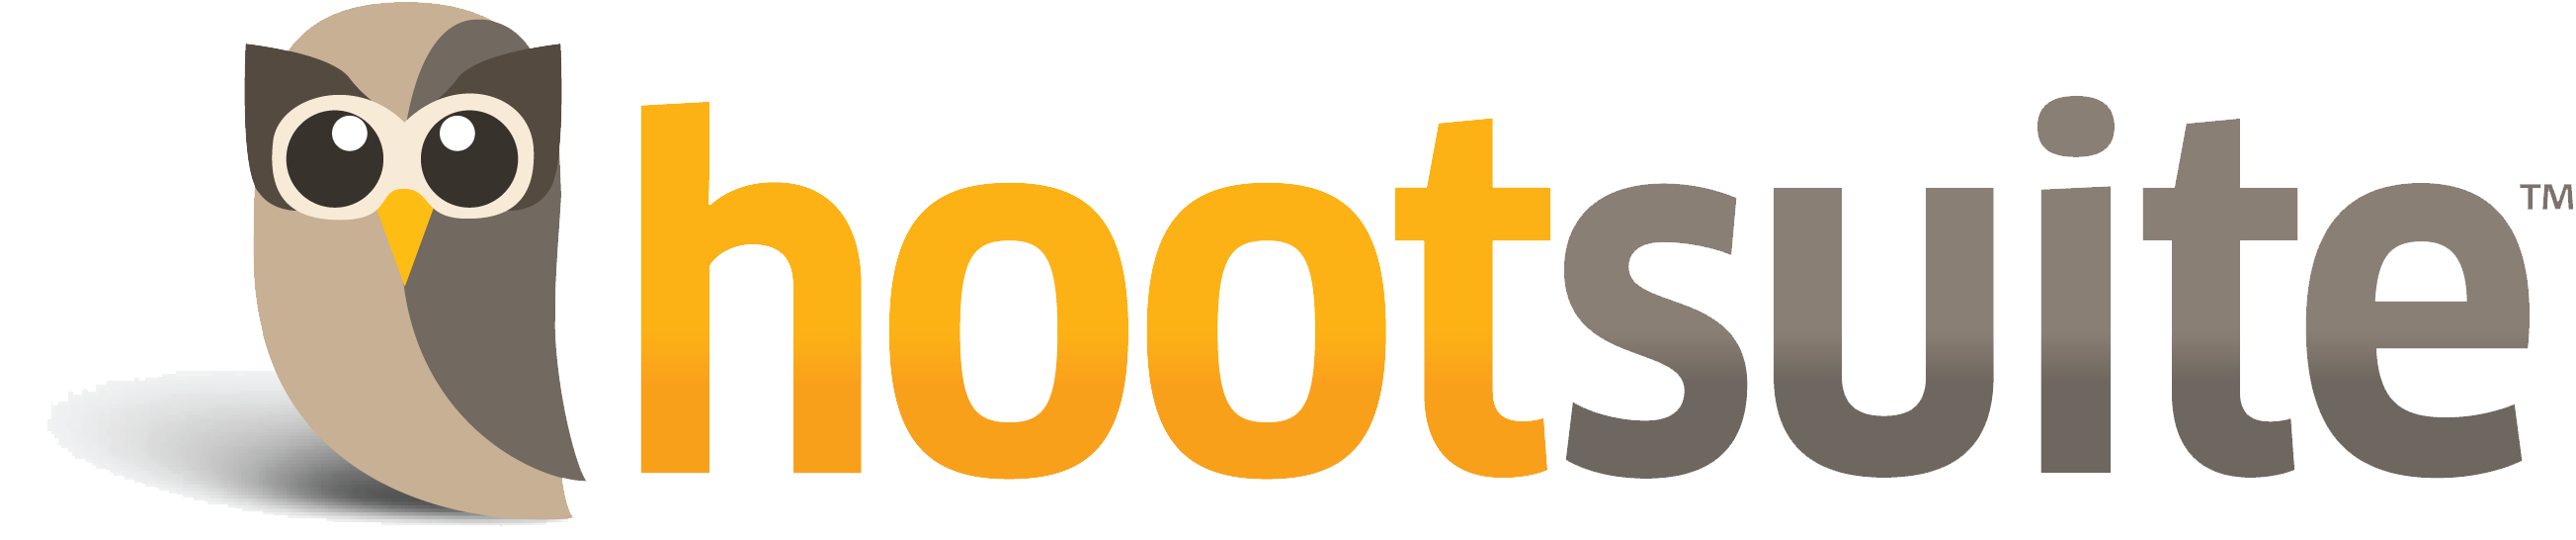 hootsuite-branding